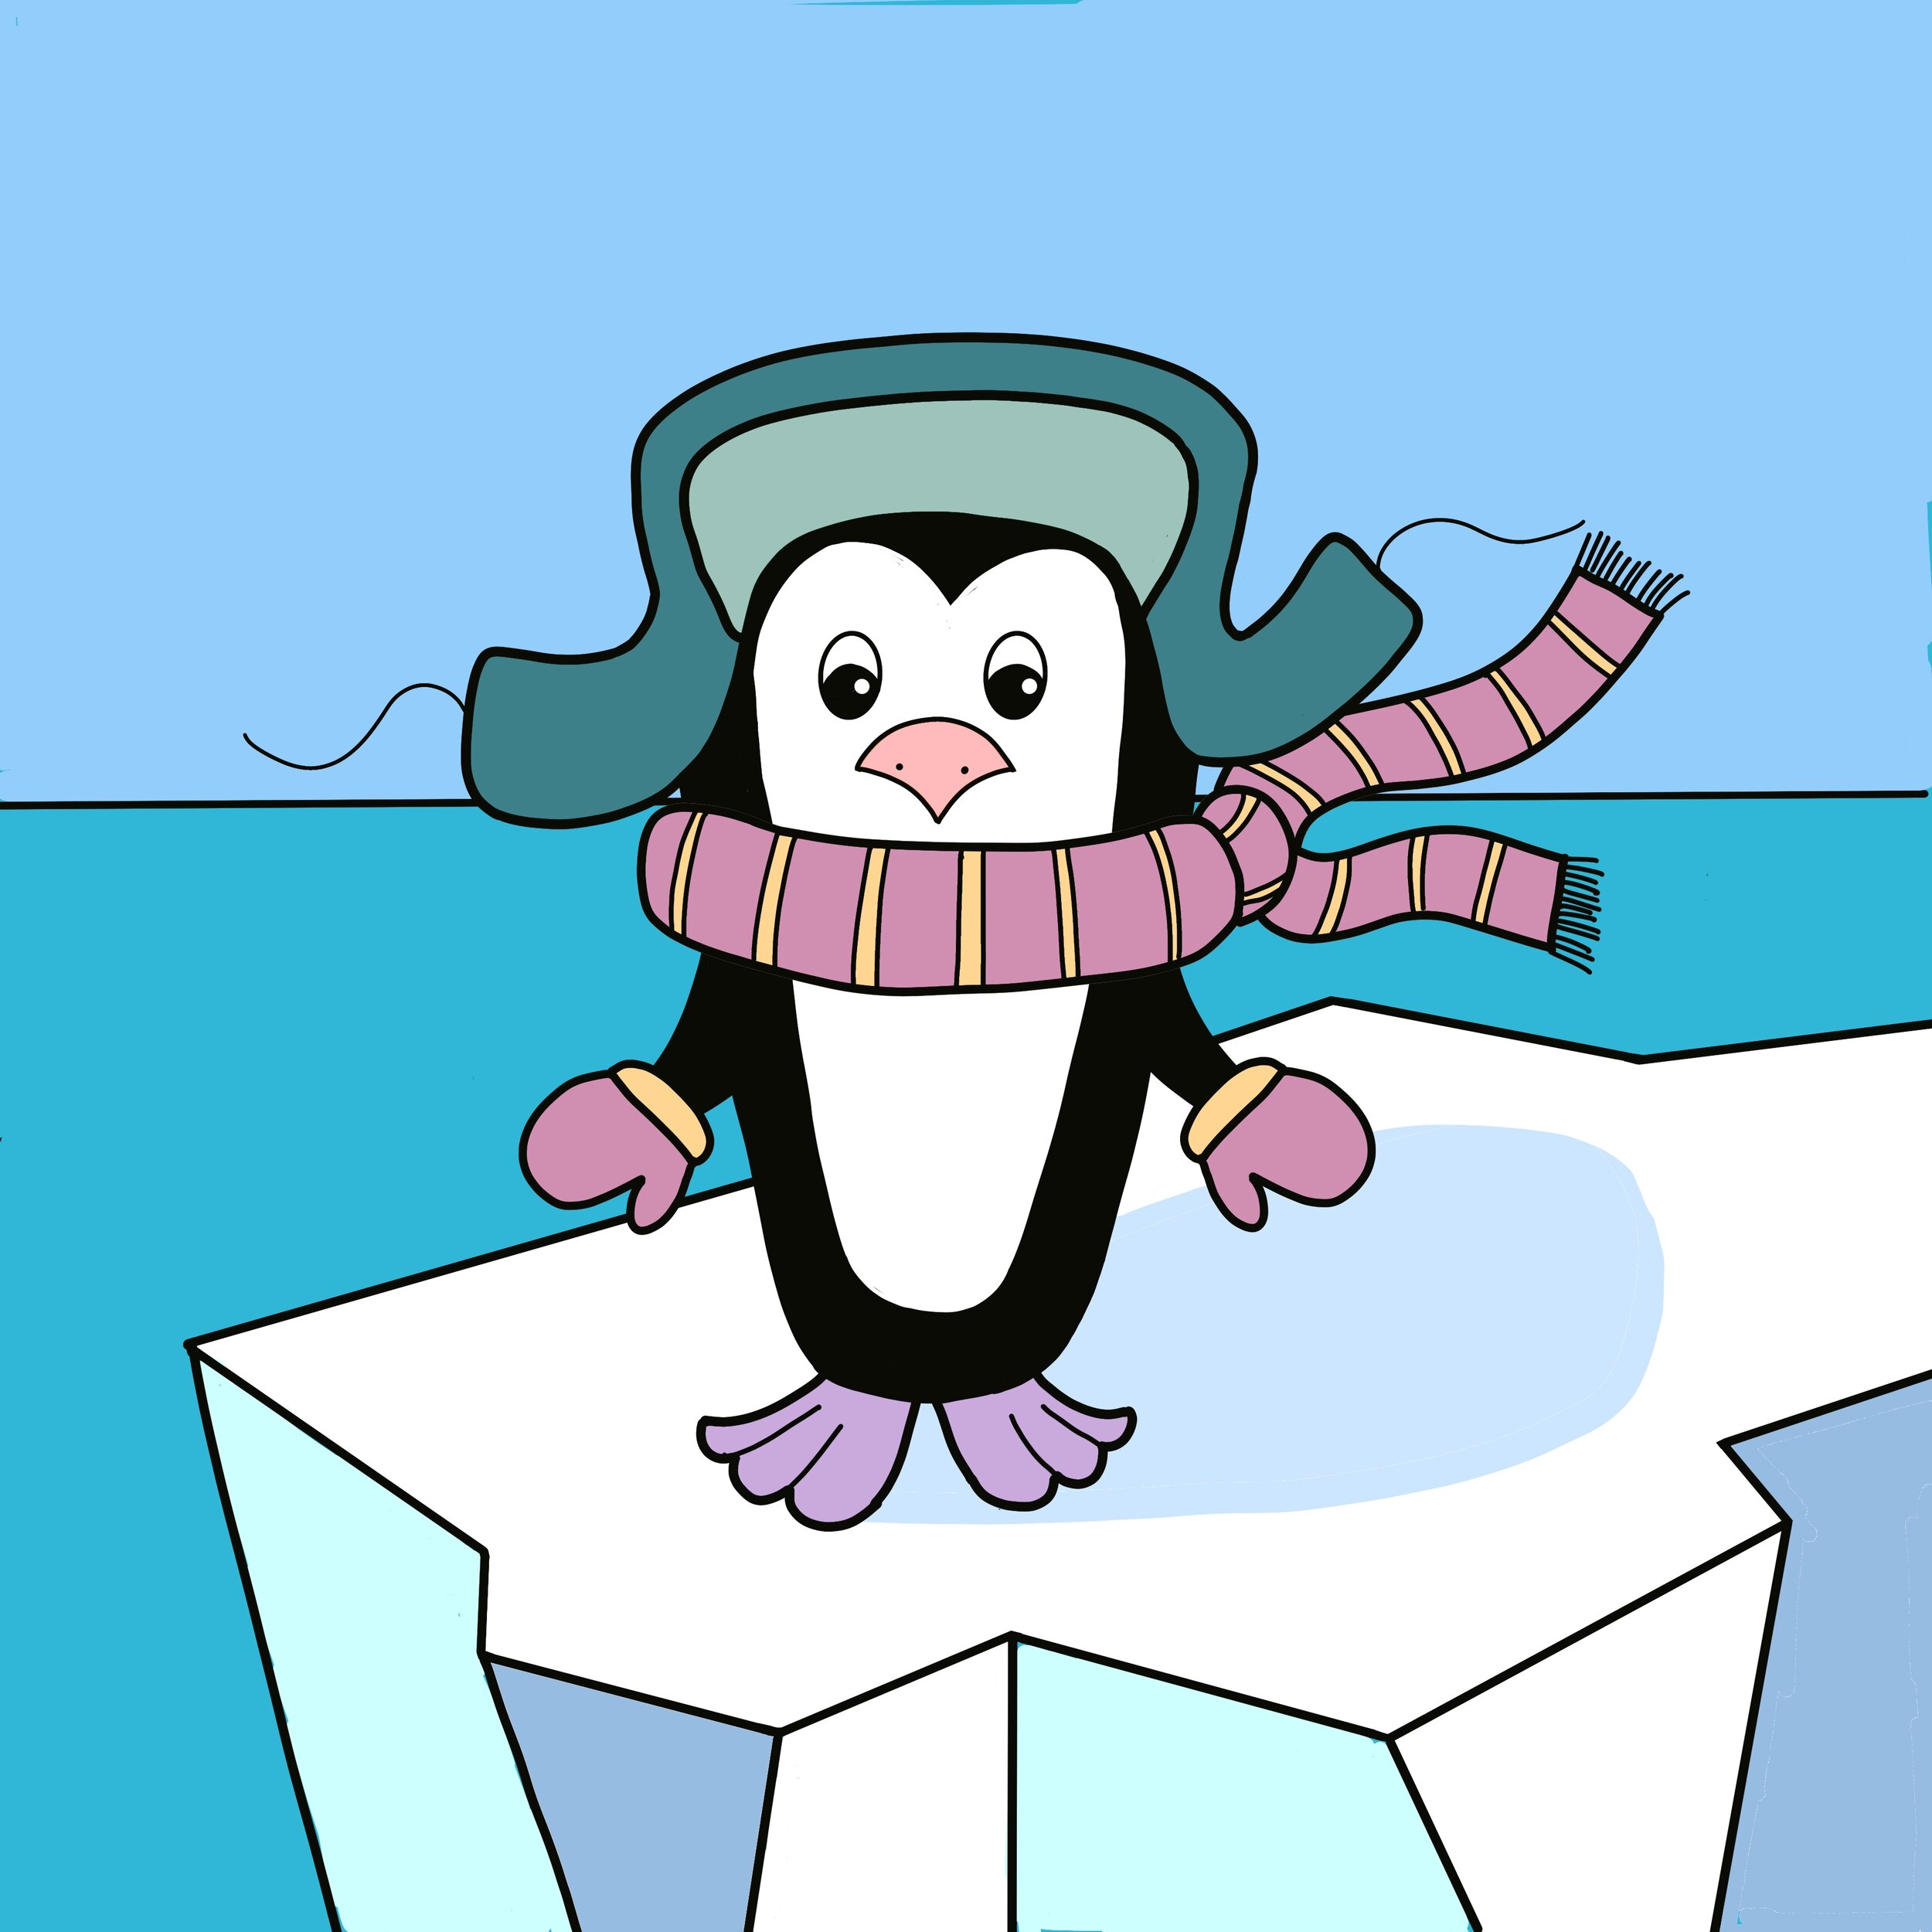 Pingvin.jpg